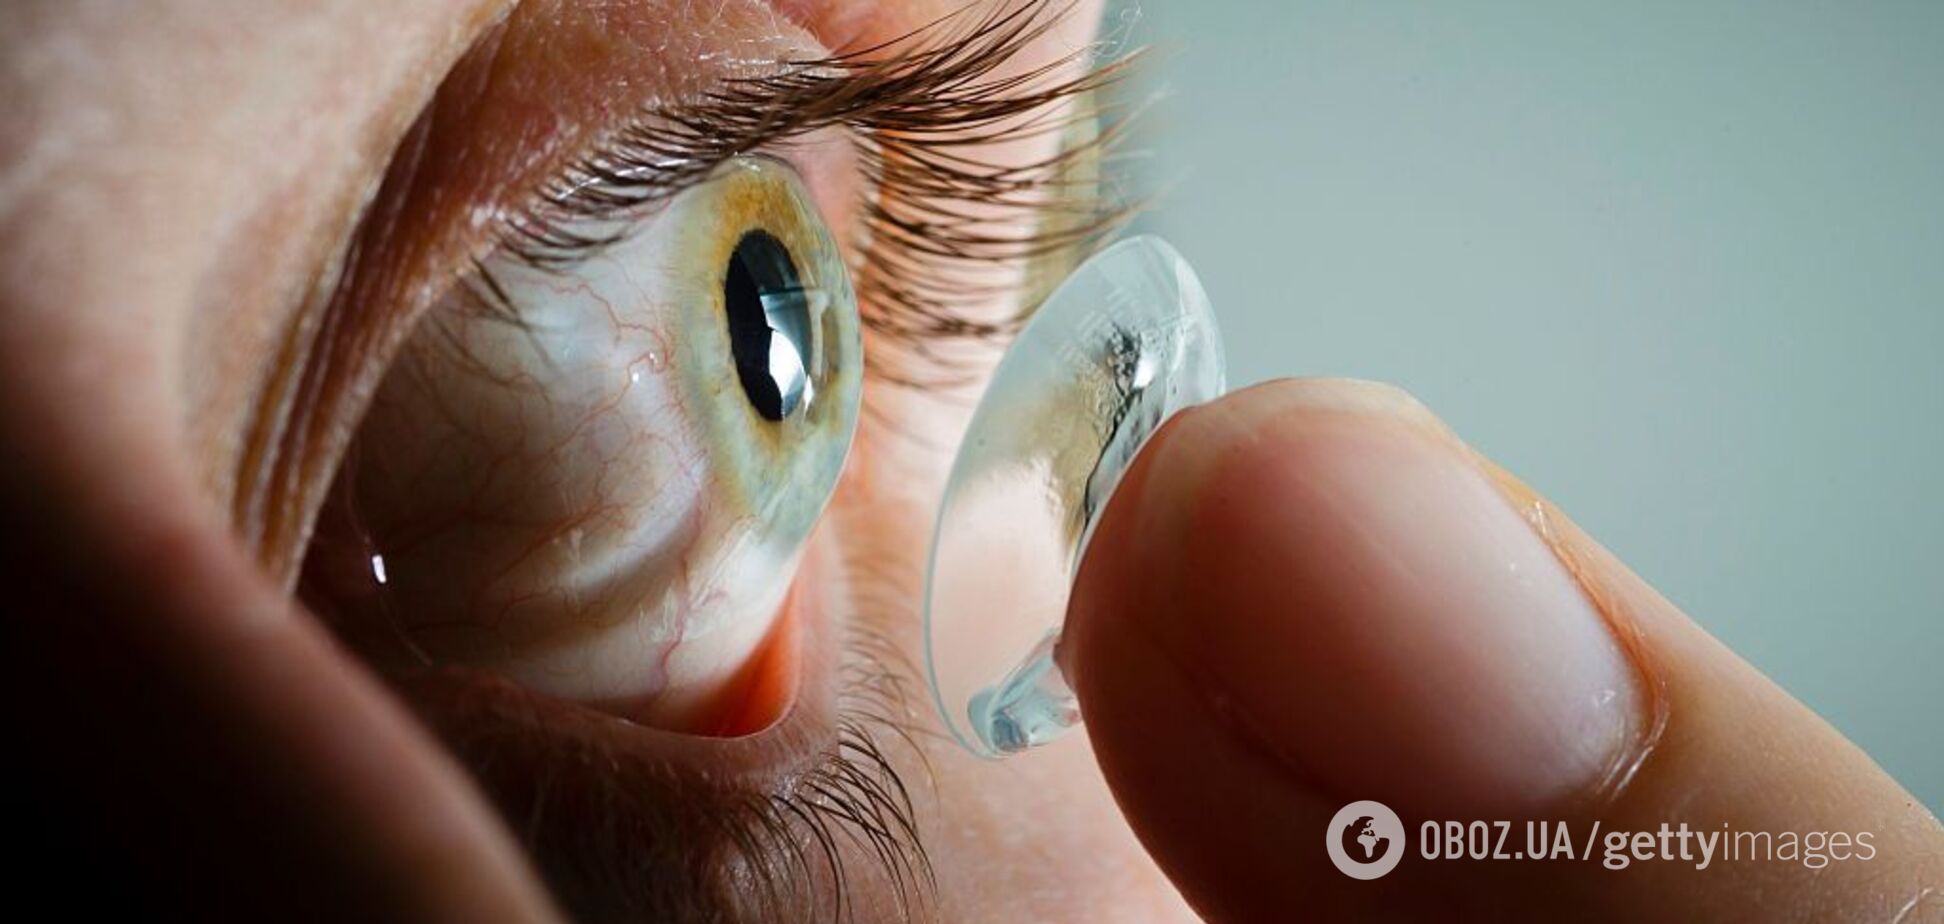 Снимайте контактные линзы! В США глаза женщины пожирали опасные бактерии